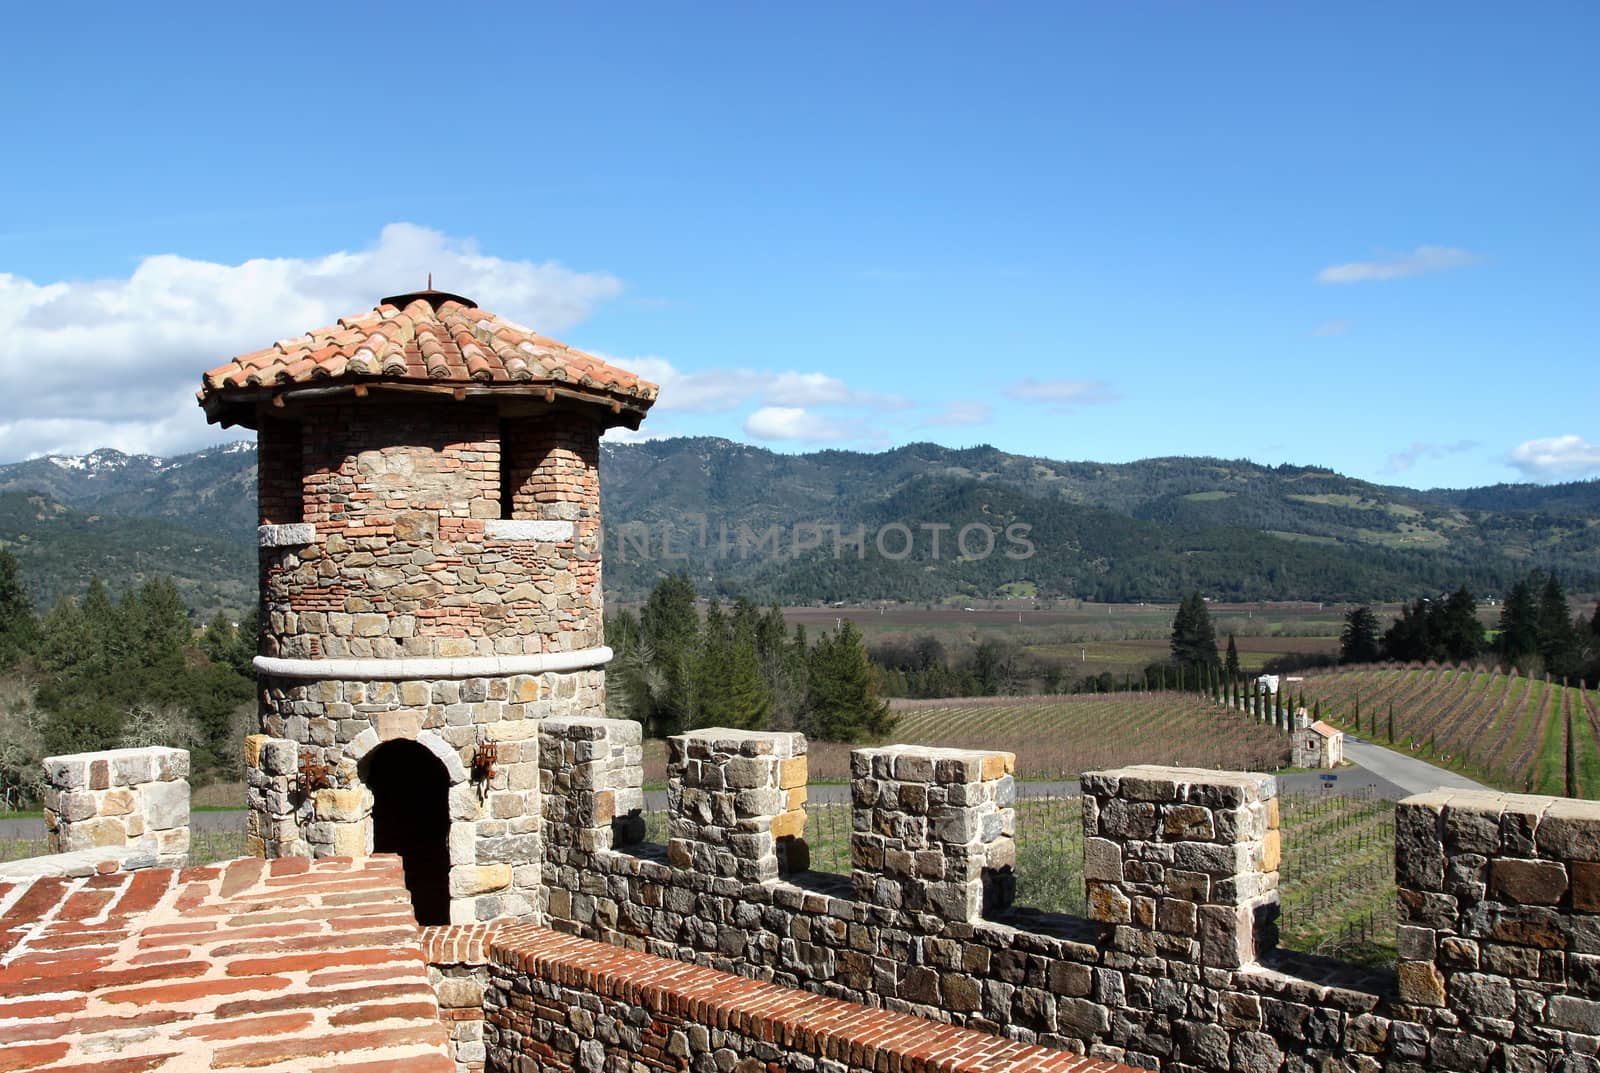 Top of old castle in rural vineyard